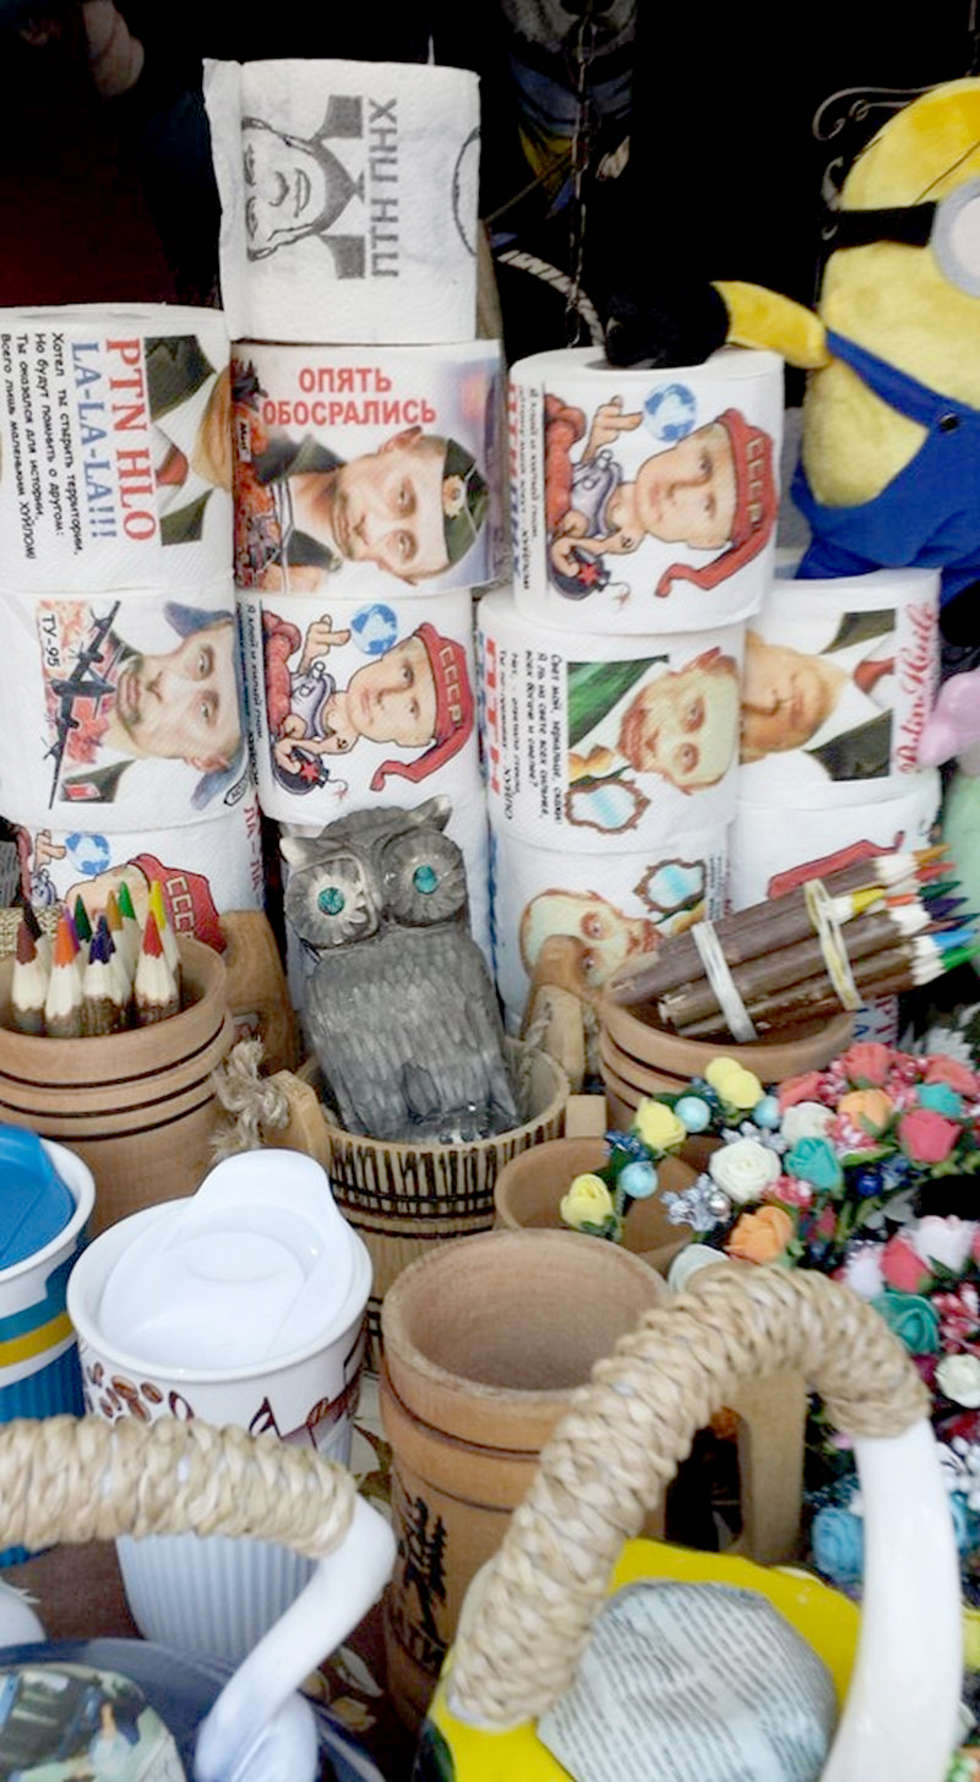  <p>Na straganach świątecznego rynku we Lwowie można kupić papier toaletowy z podobiznami Władymira Putina</p>
<p>Fot. Julia Siegieda</p>
<p>&nbsp;</p>